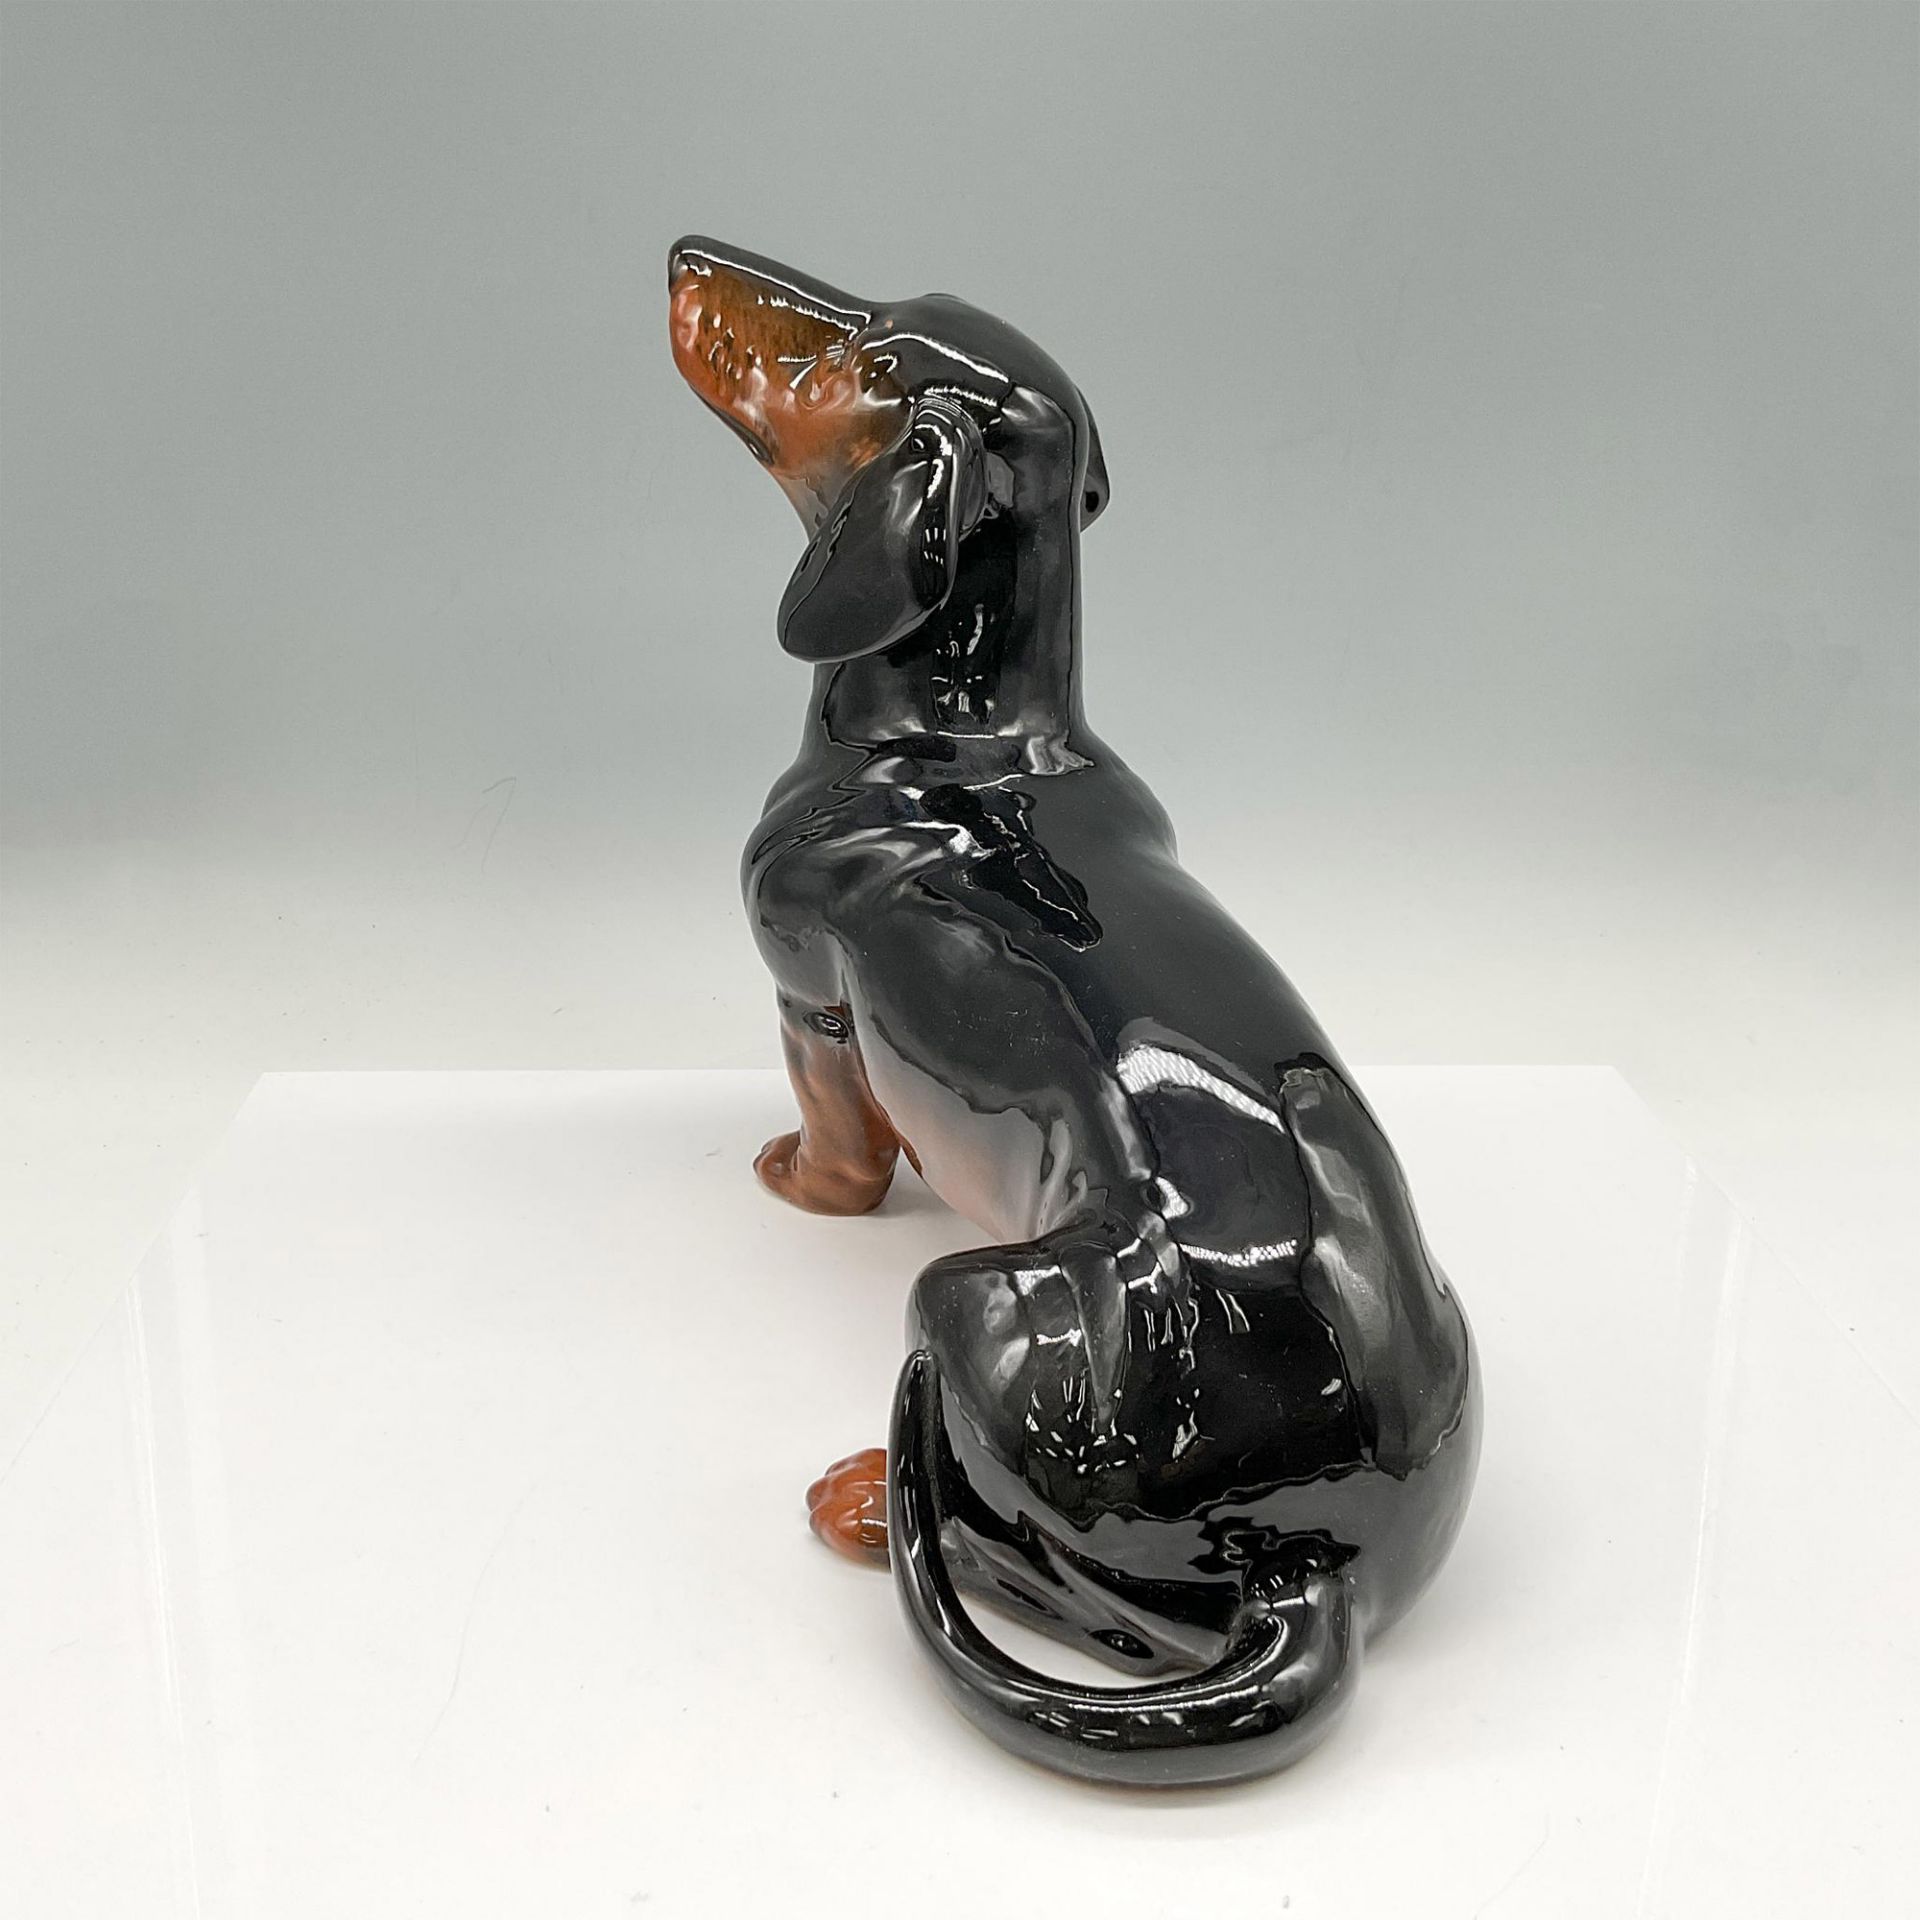 Beswick Porcelain Dog Figurine, Large Dachshund - Image 3 of 4